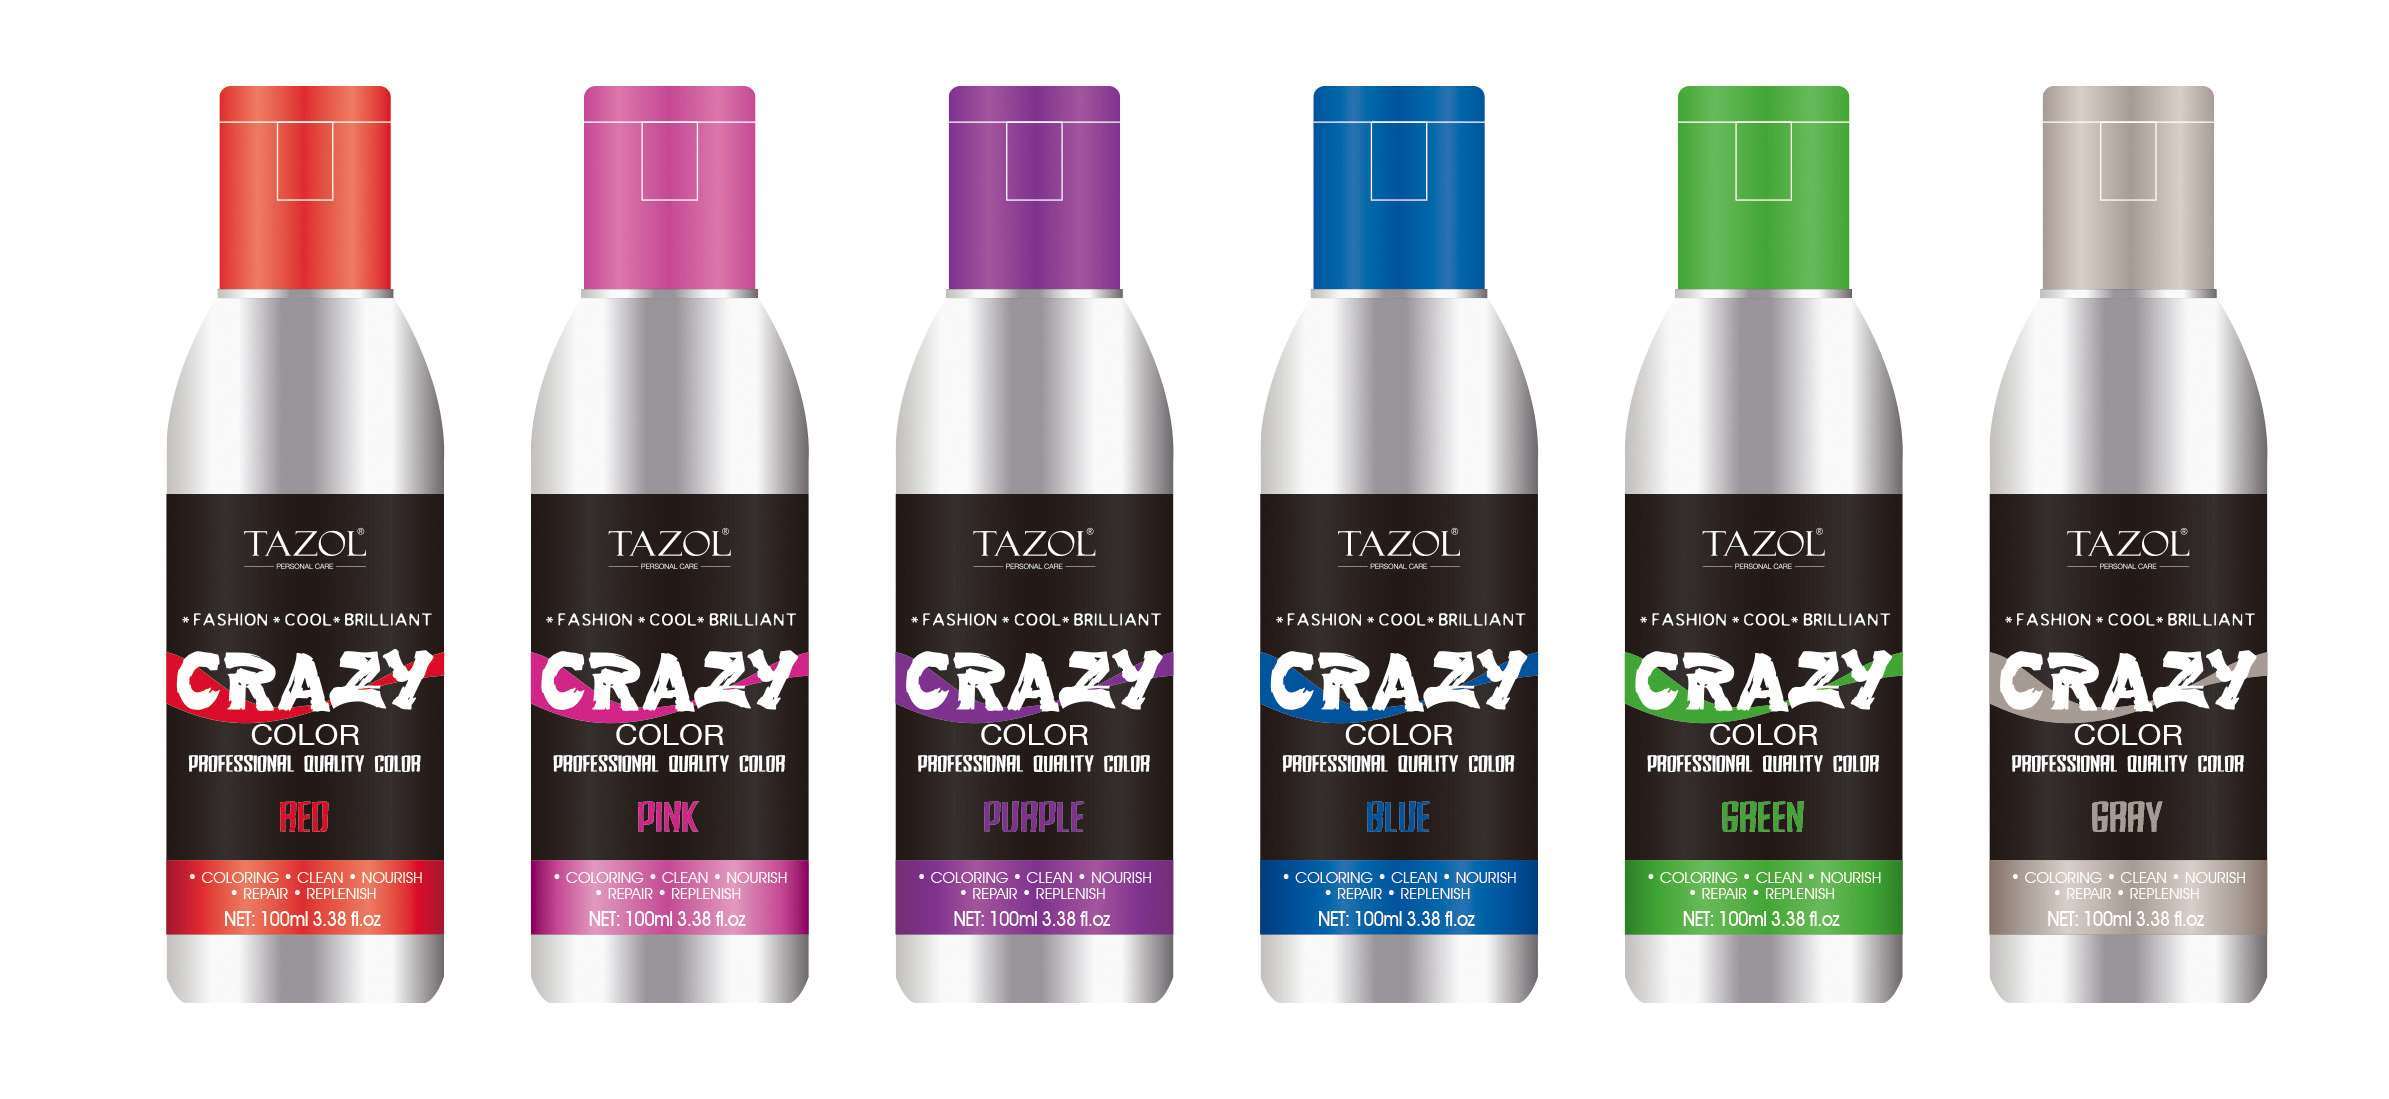 Tazol Hair Care No Ammonia Semi-Permanent Crazy Color 100ml